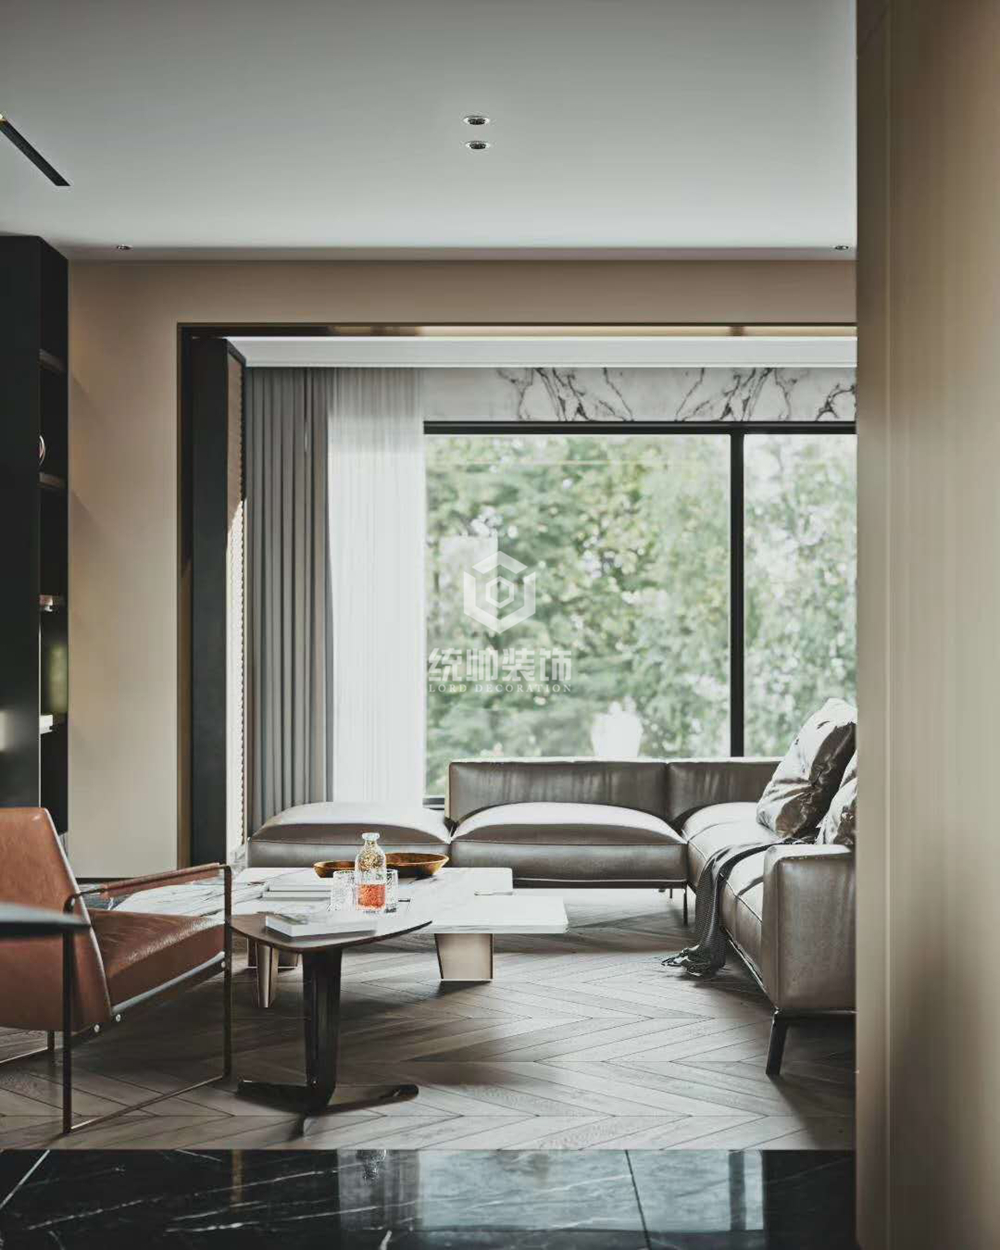 浦东新区新都会121平方美式风格2室2厅客厅装修效果图